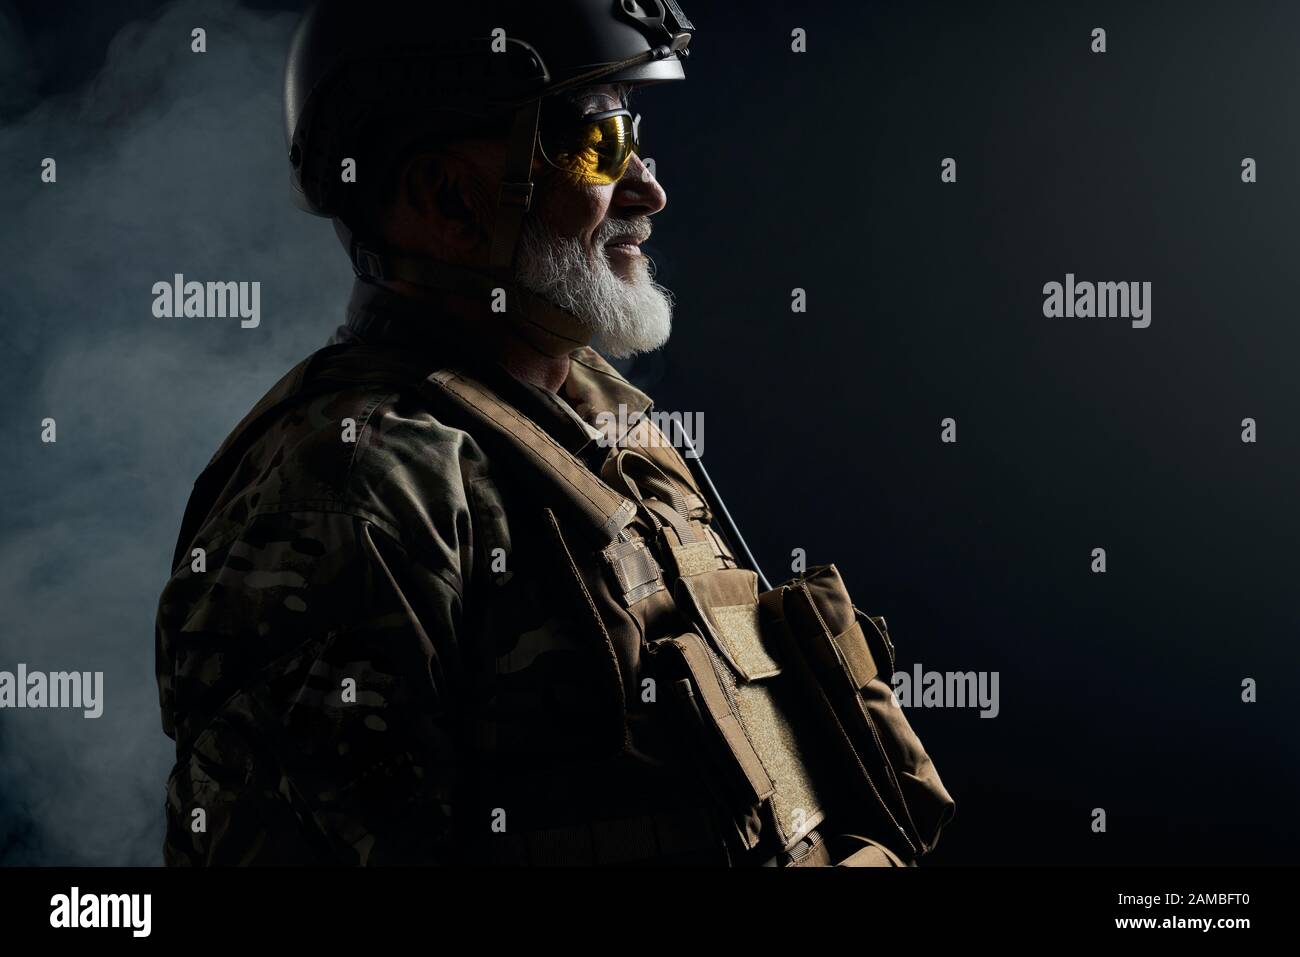 Vista laterale del vecchio ufficiale militare che guarda lontano. Crop ritratto di veterano bearded in uniforme camouflage, occhiali e casco che posano in atmosfera scura fumosa. Concetto di militare, esercito. Foto Stock